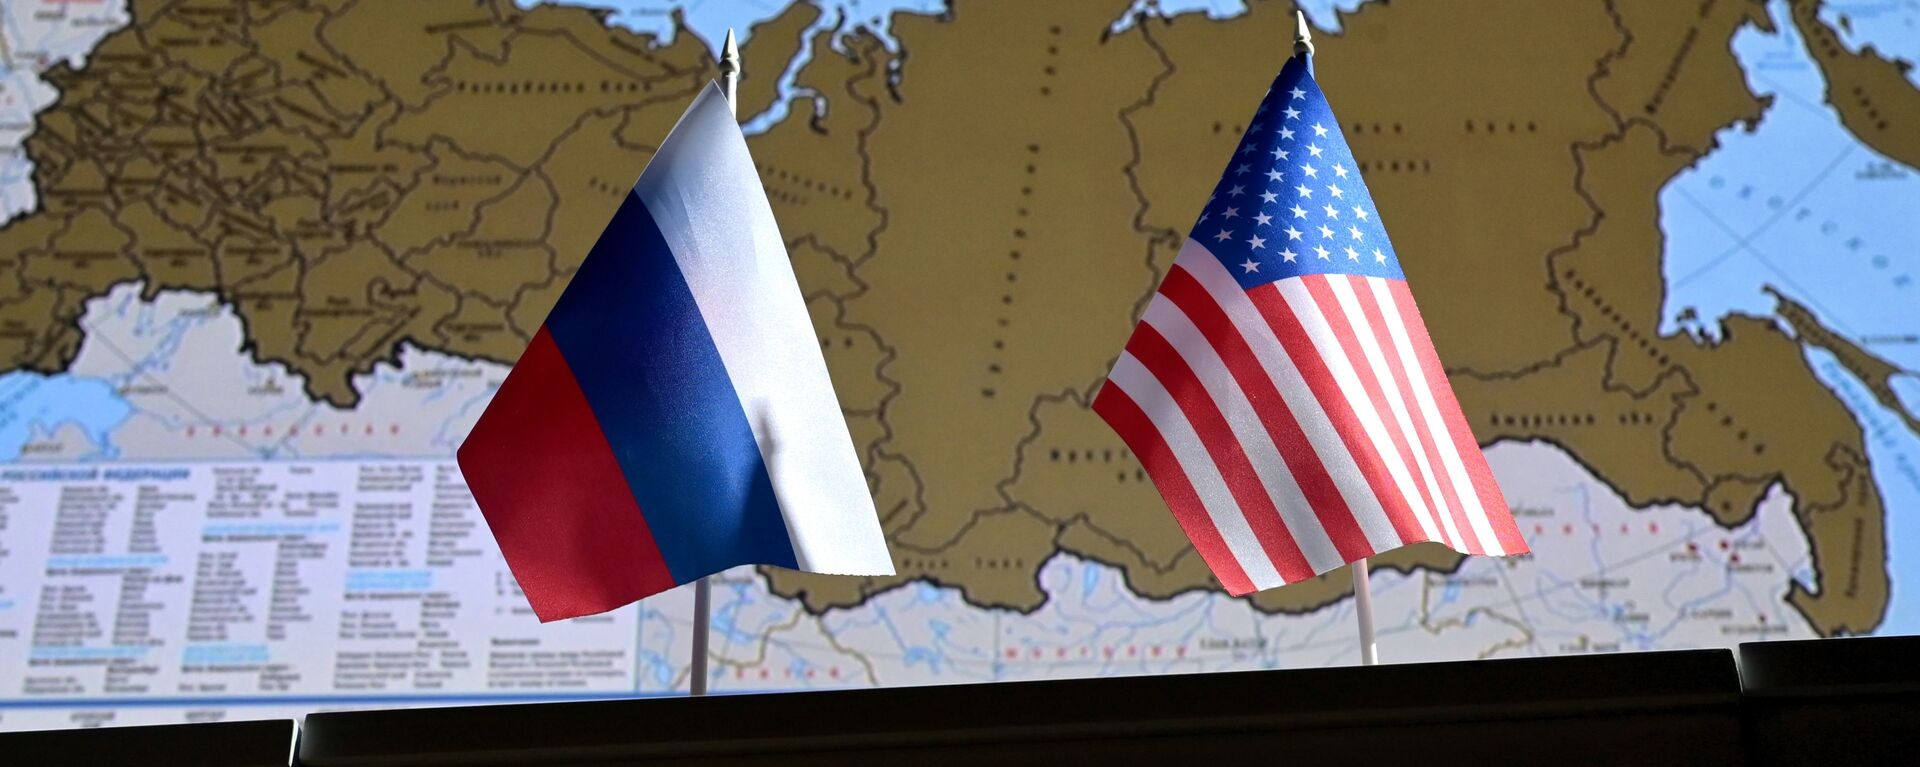 Государственные флаги России и США. - Sputnik Абхазия, 1920, 18.06.2021